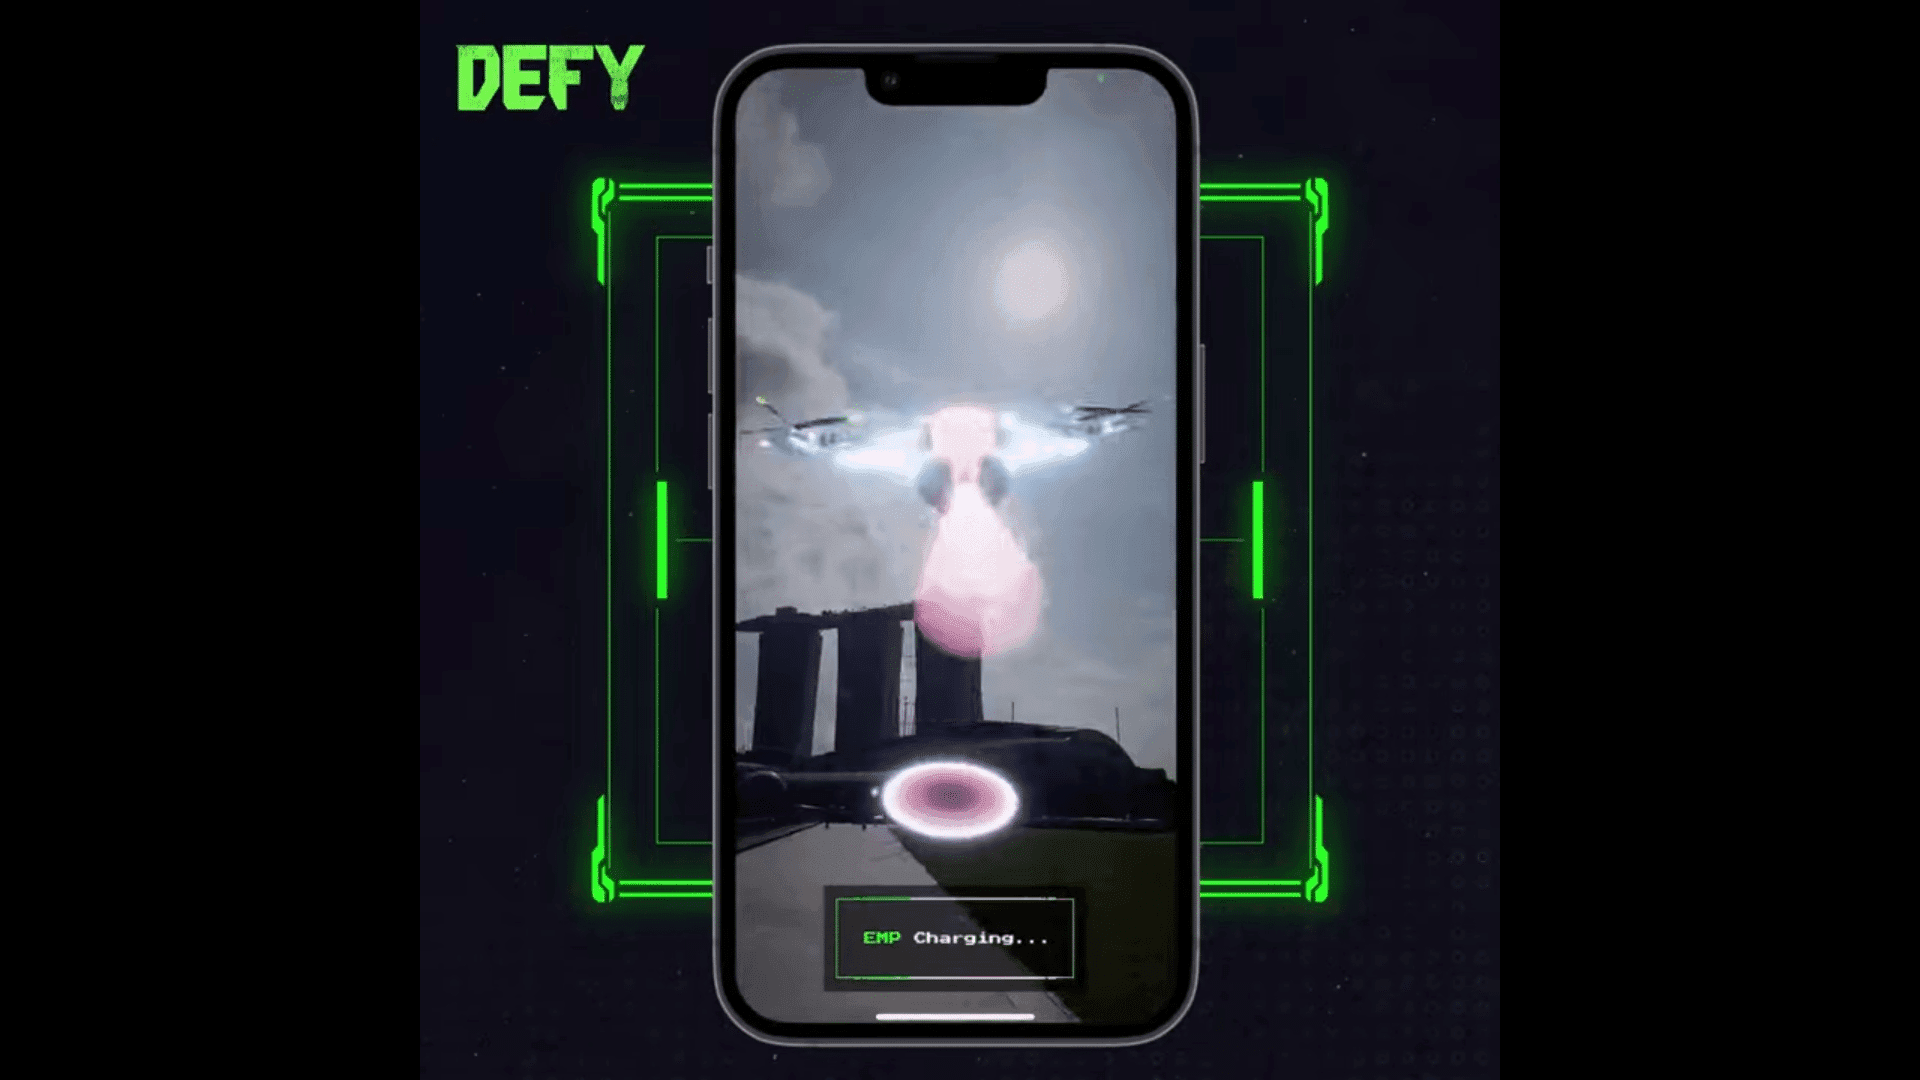 DEFY is een mobiele game die elementen uit de virtuele en fysieke wereld combineert om een meeslepende metaverse-ervaring te bieden.